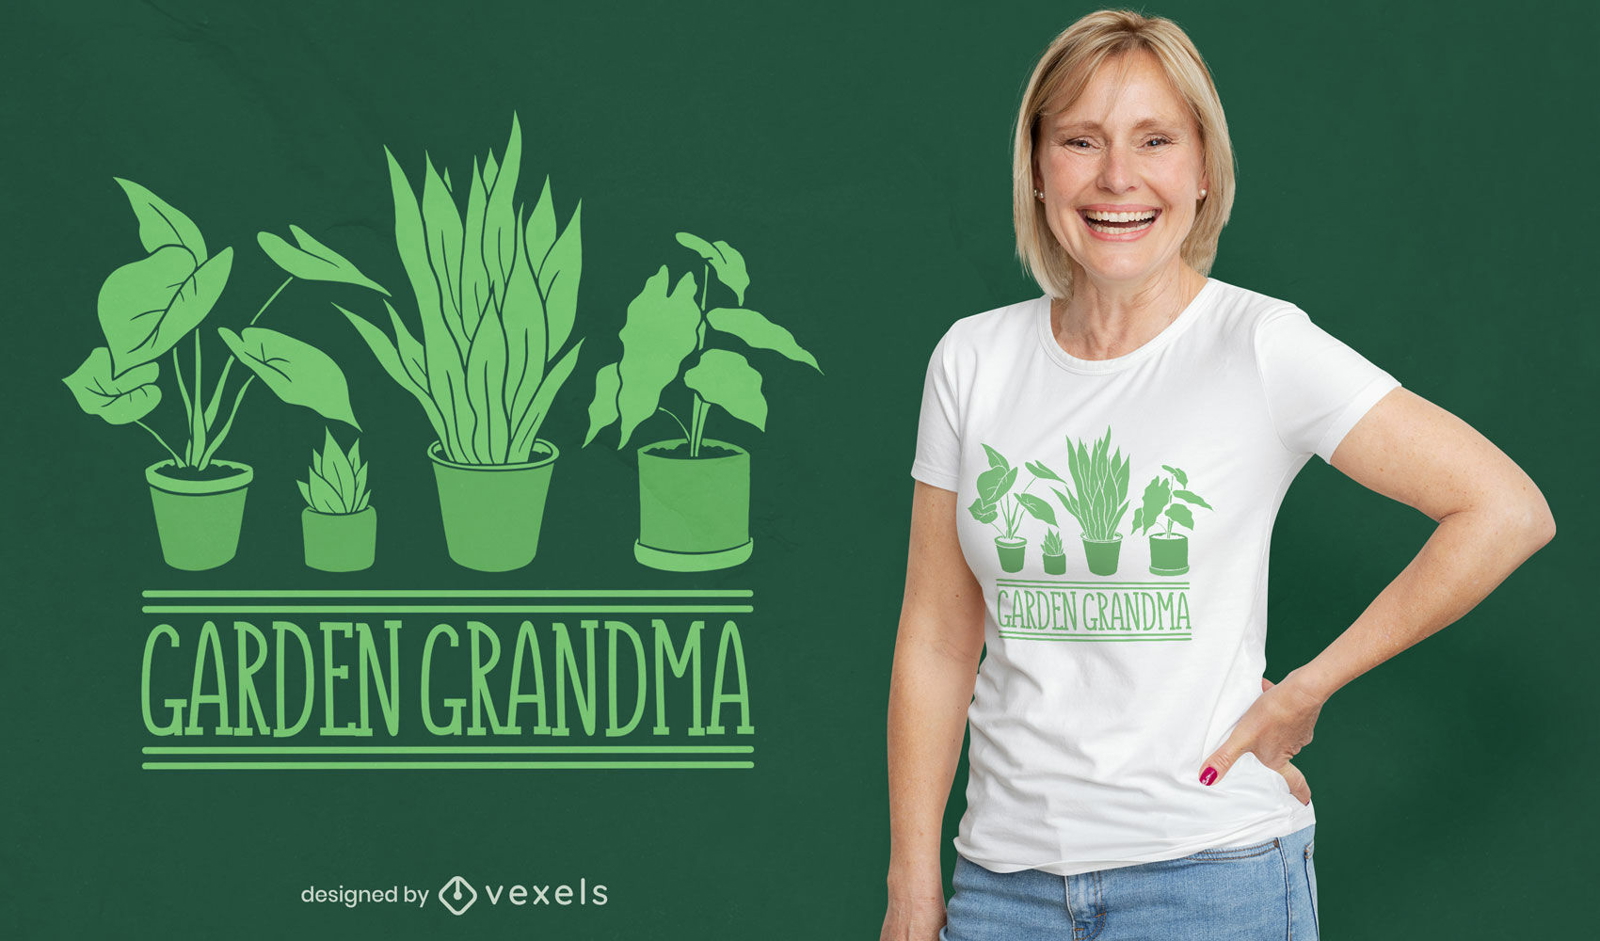 Garden grandma t-shirt design